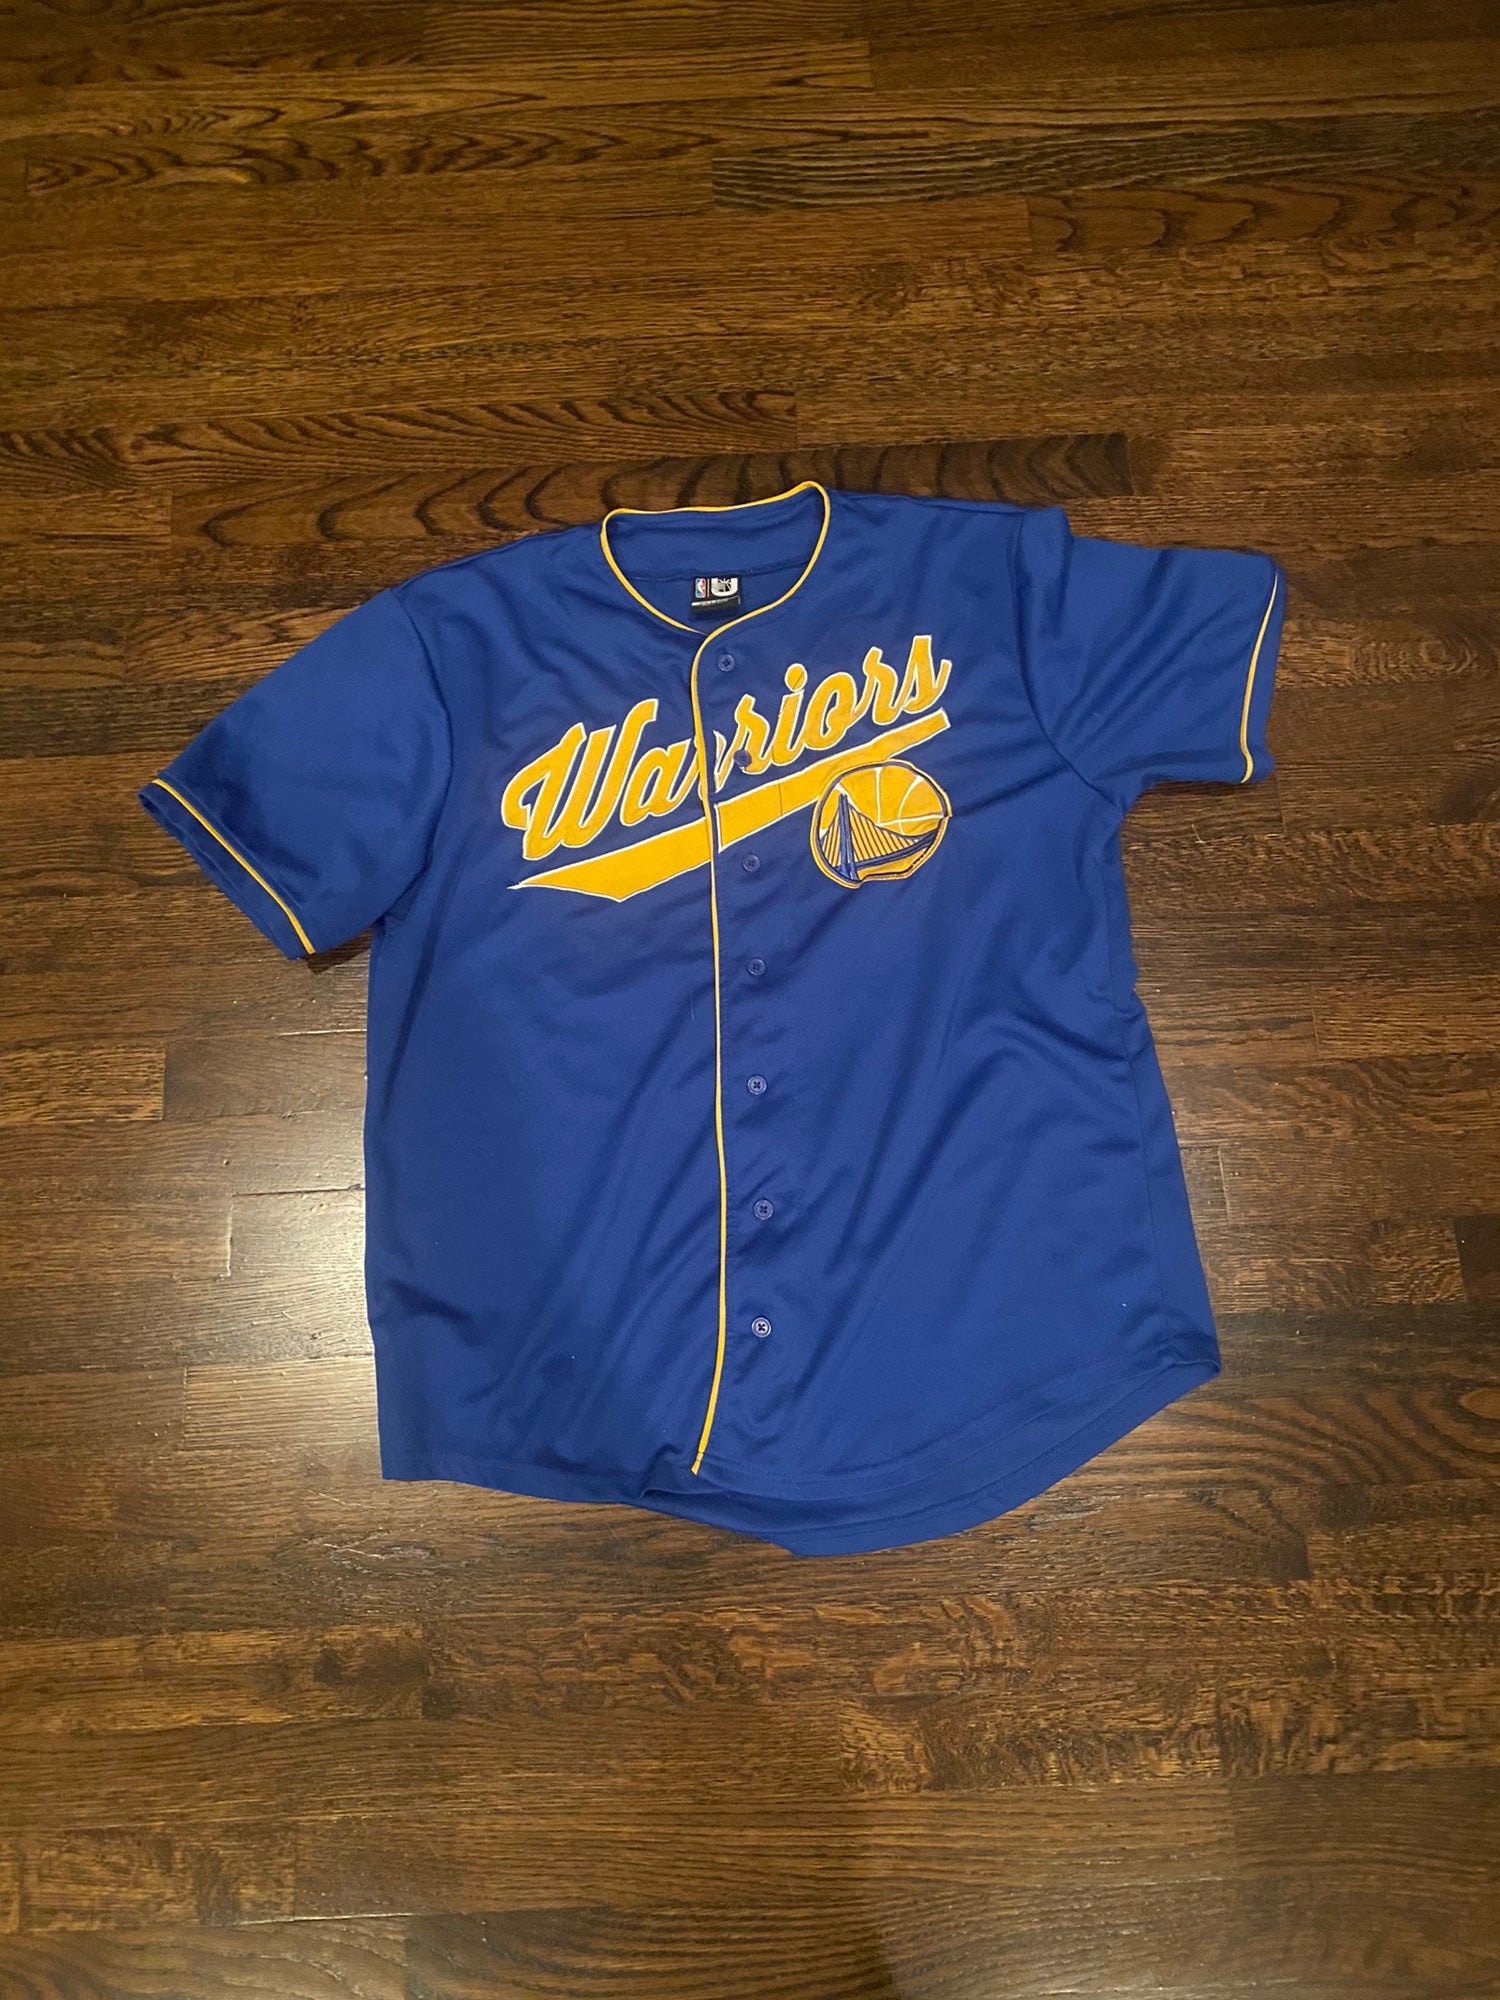 Golden State Warriors Baseball jersey, Adult XXL